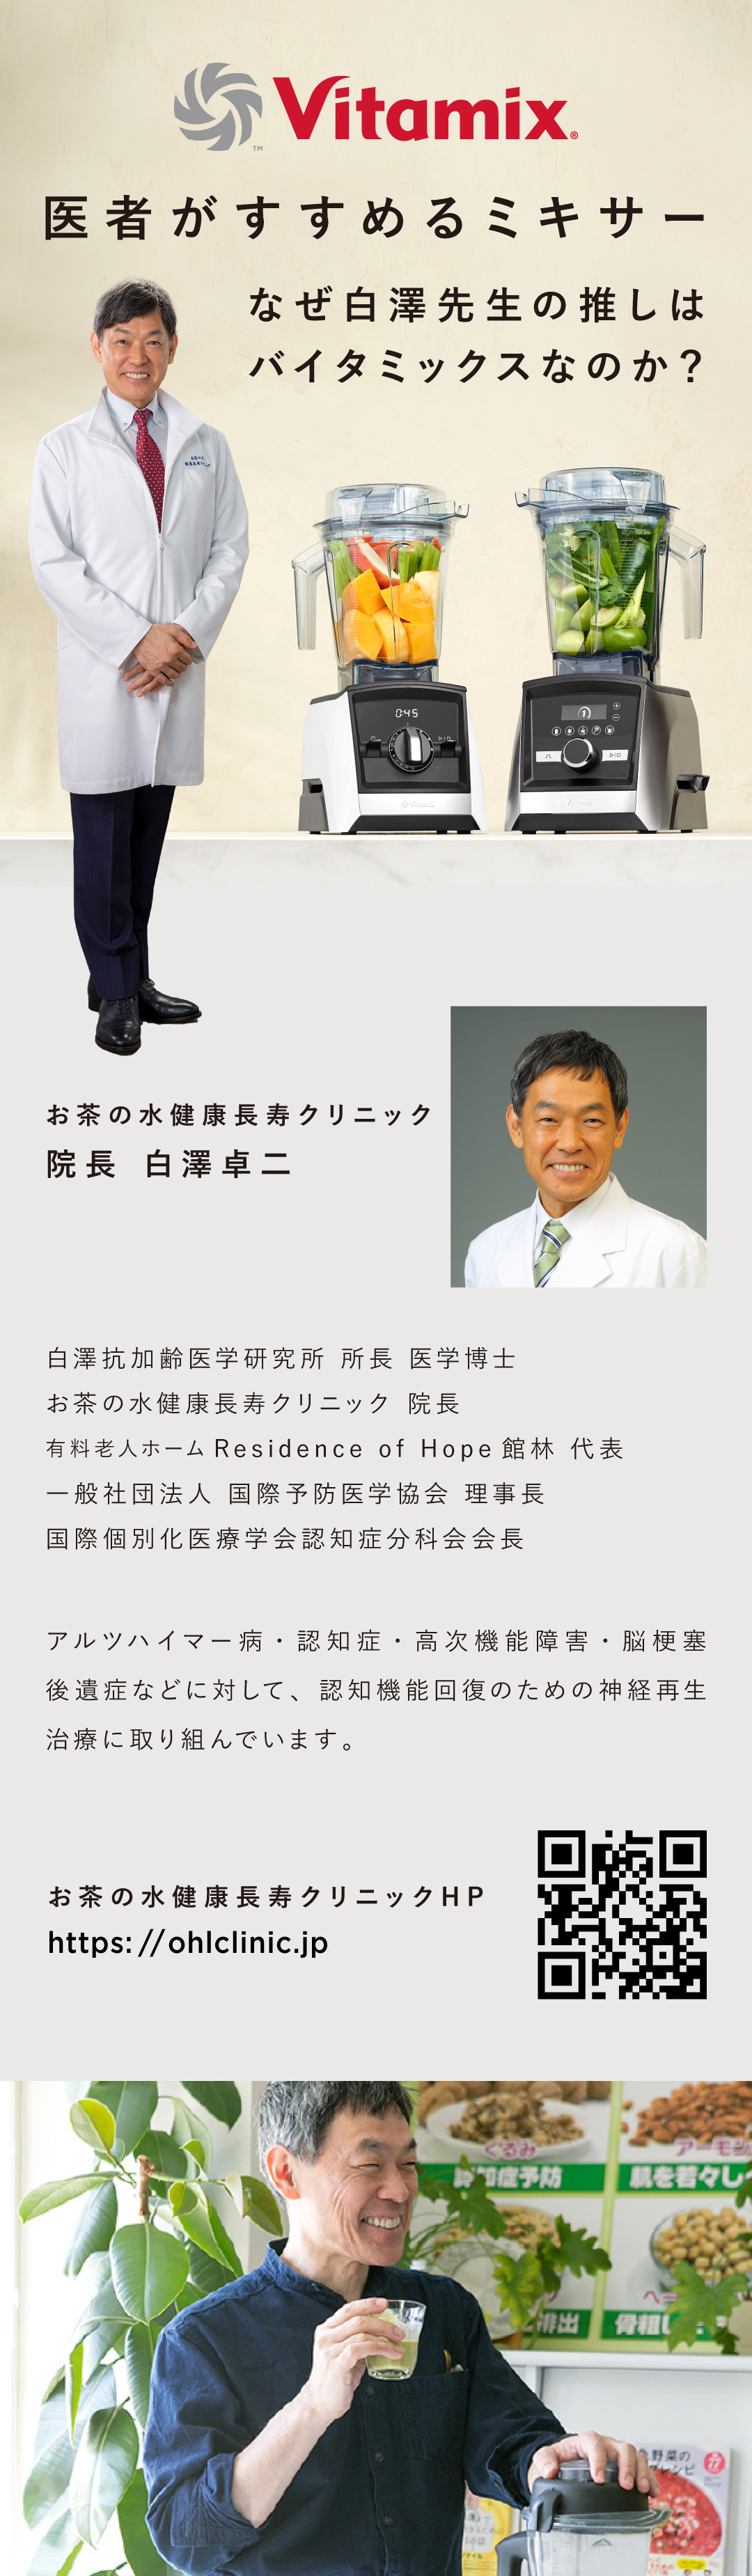 バイタミックス Vitamix 医者がすすめるミキサー 白澤先生 お茶の水健康長寿クリニック 推しはバイタミックス Vitamix